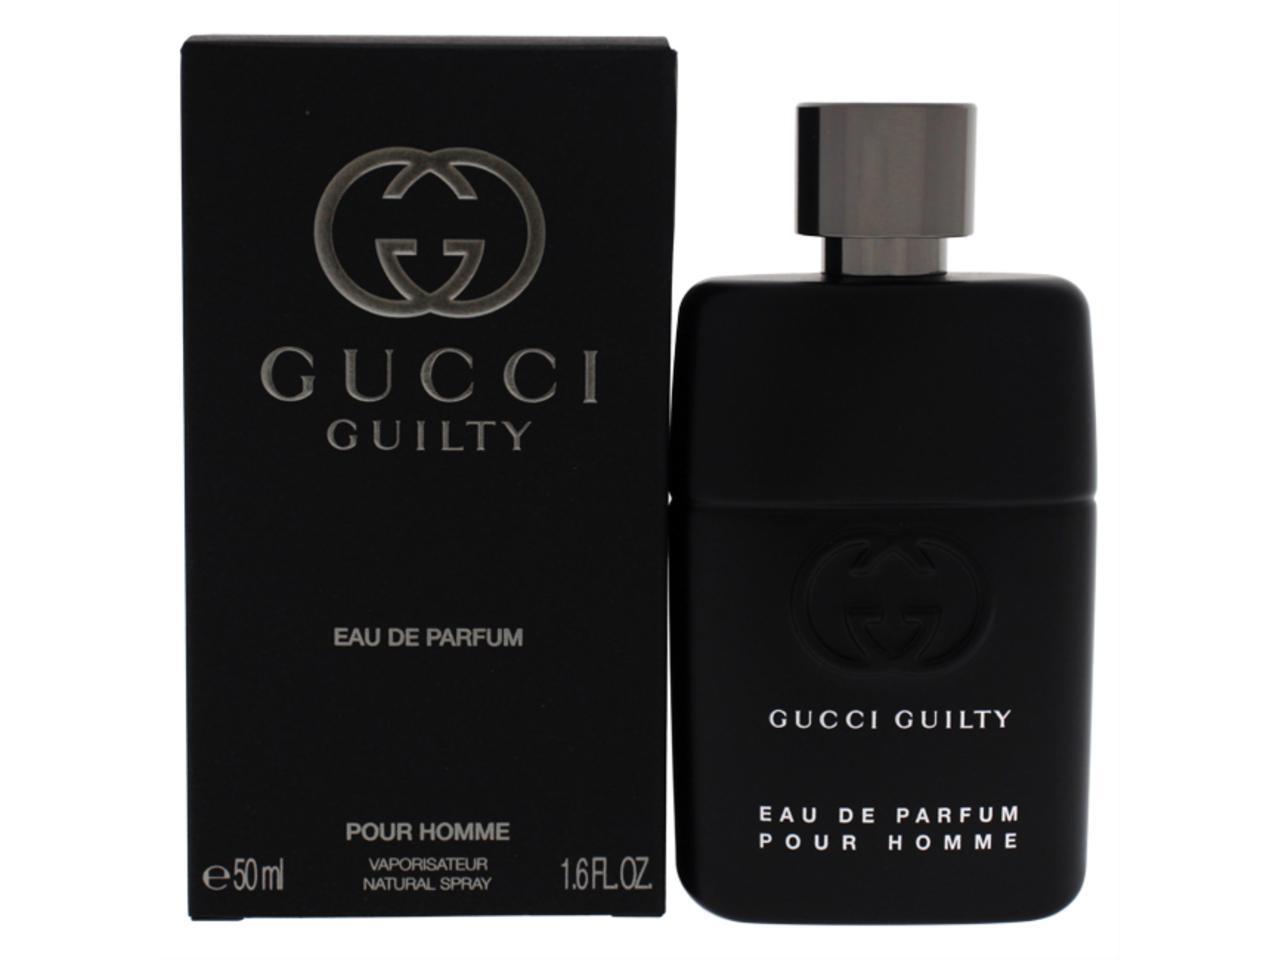 Gucci Guilty Pour Homme Eau De Parfum EDP 90ml at Ratans Online Shop - Perfumes Wholesale and Retailer Fragrance